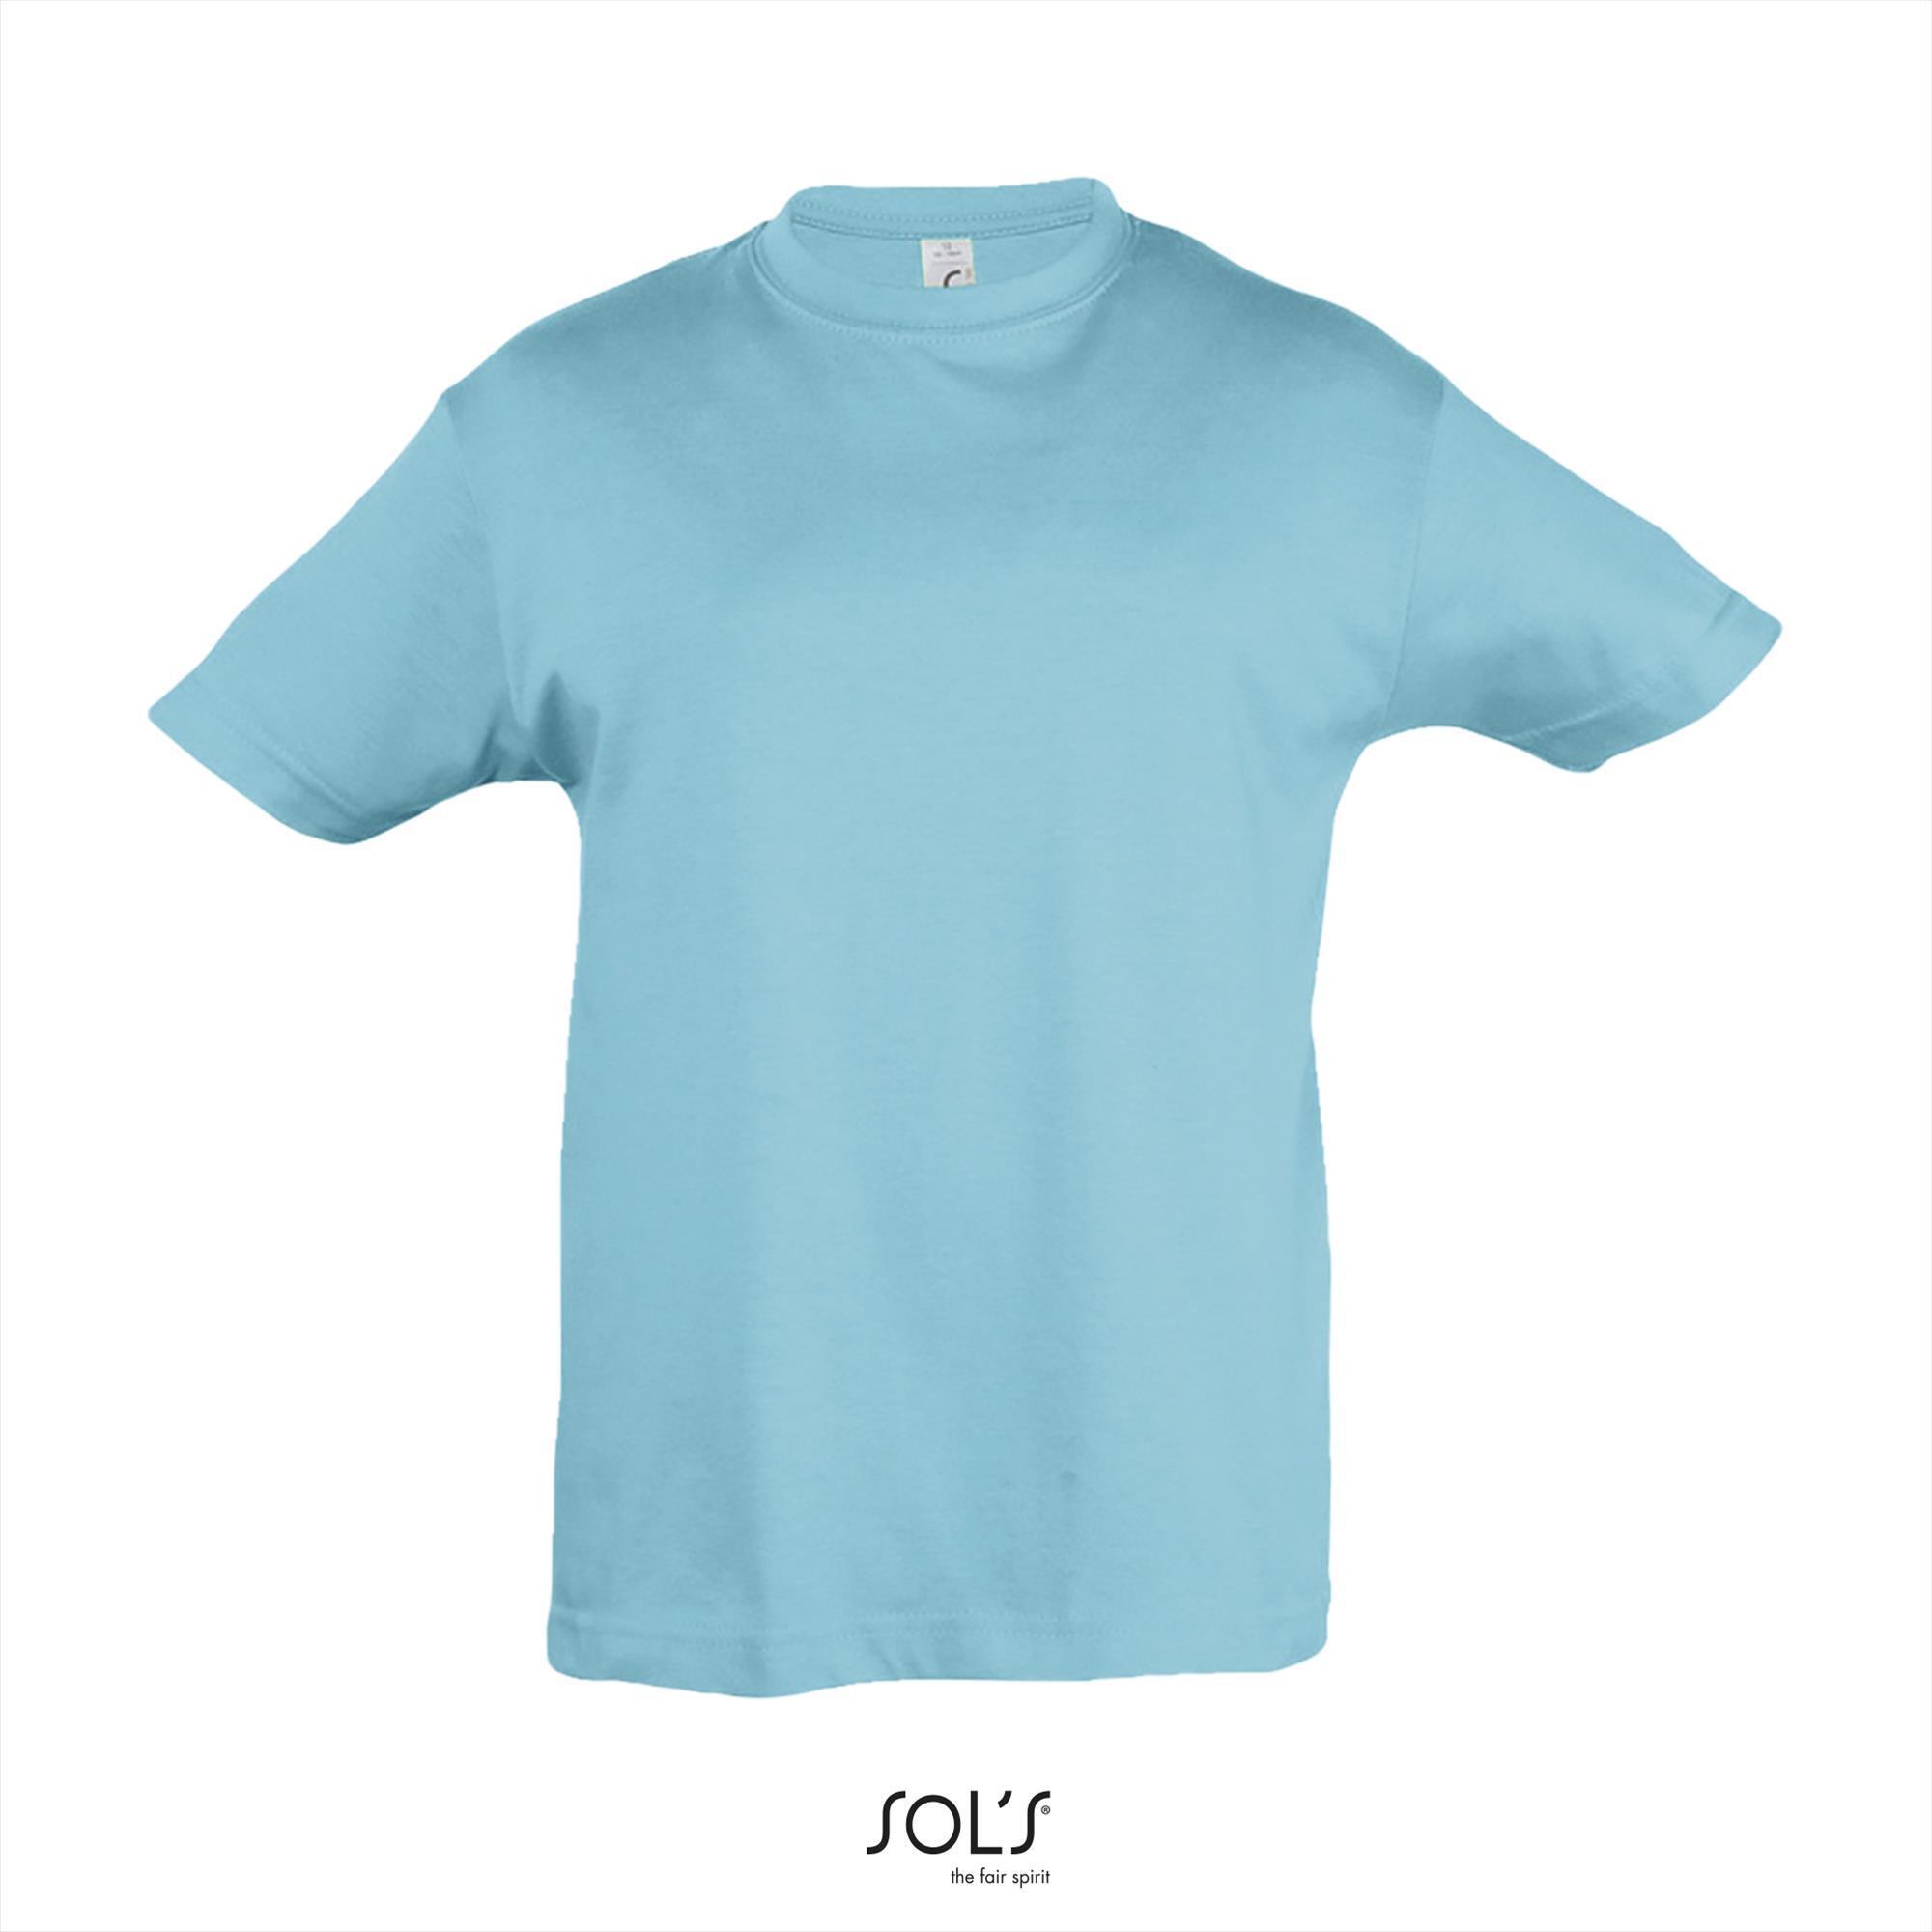 Klassiek kinder T-shirt atoll blauw